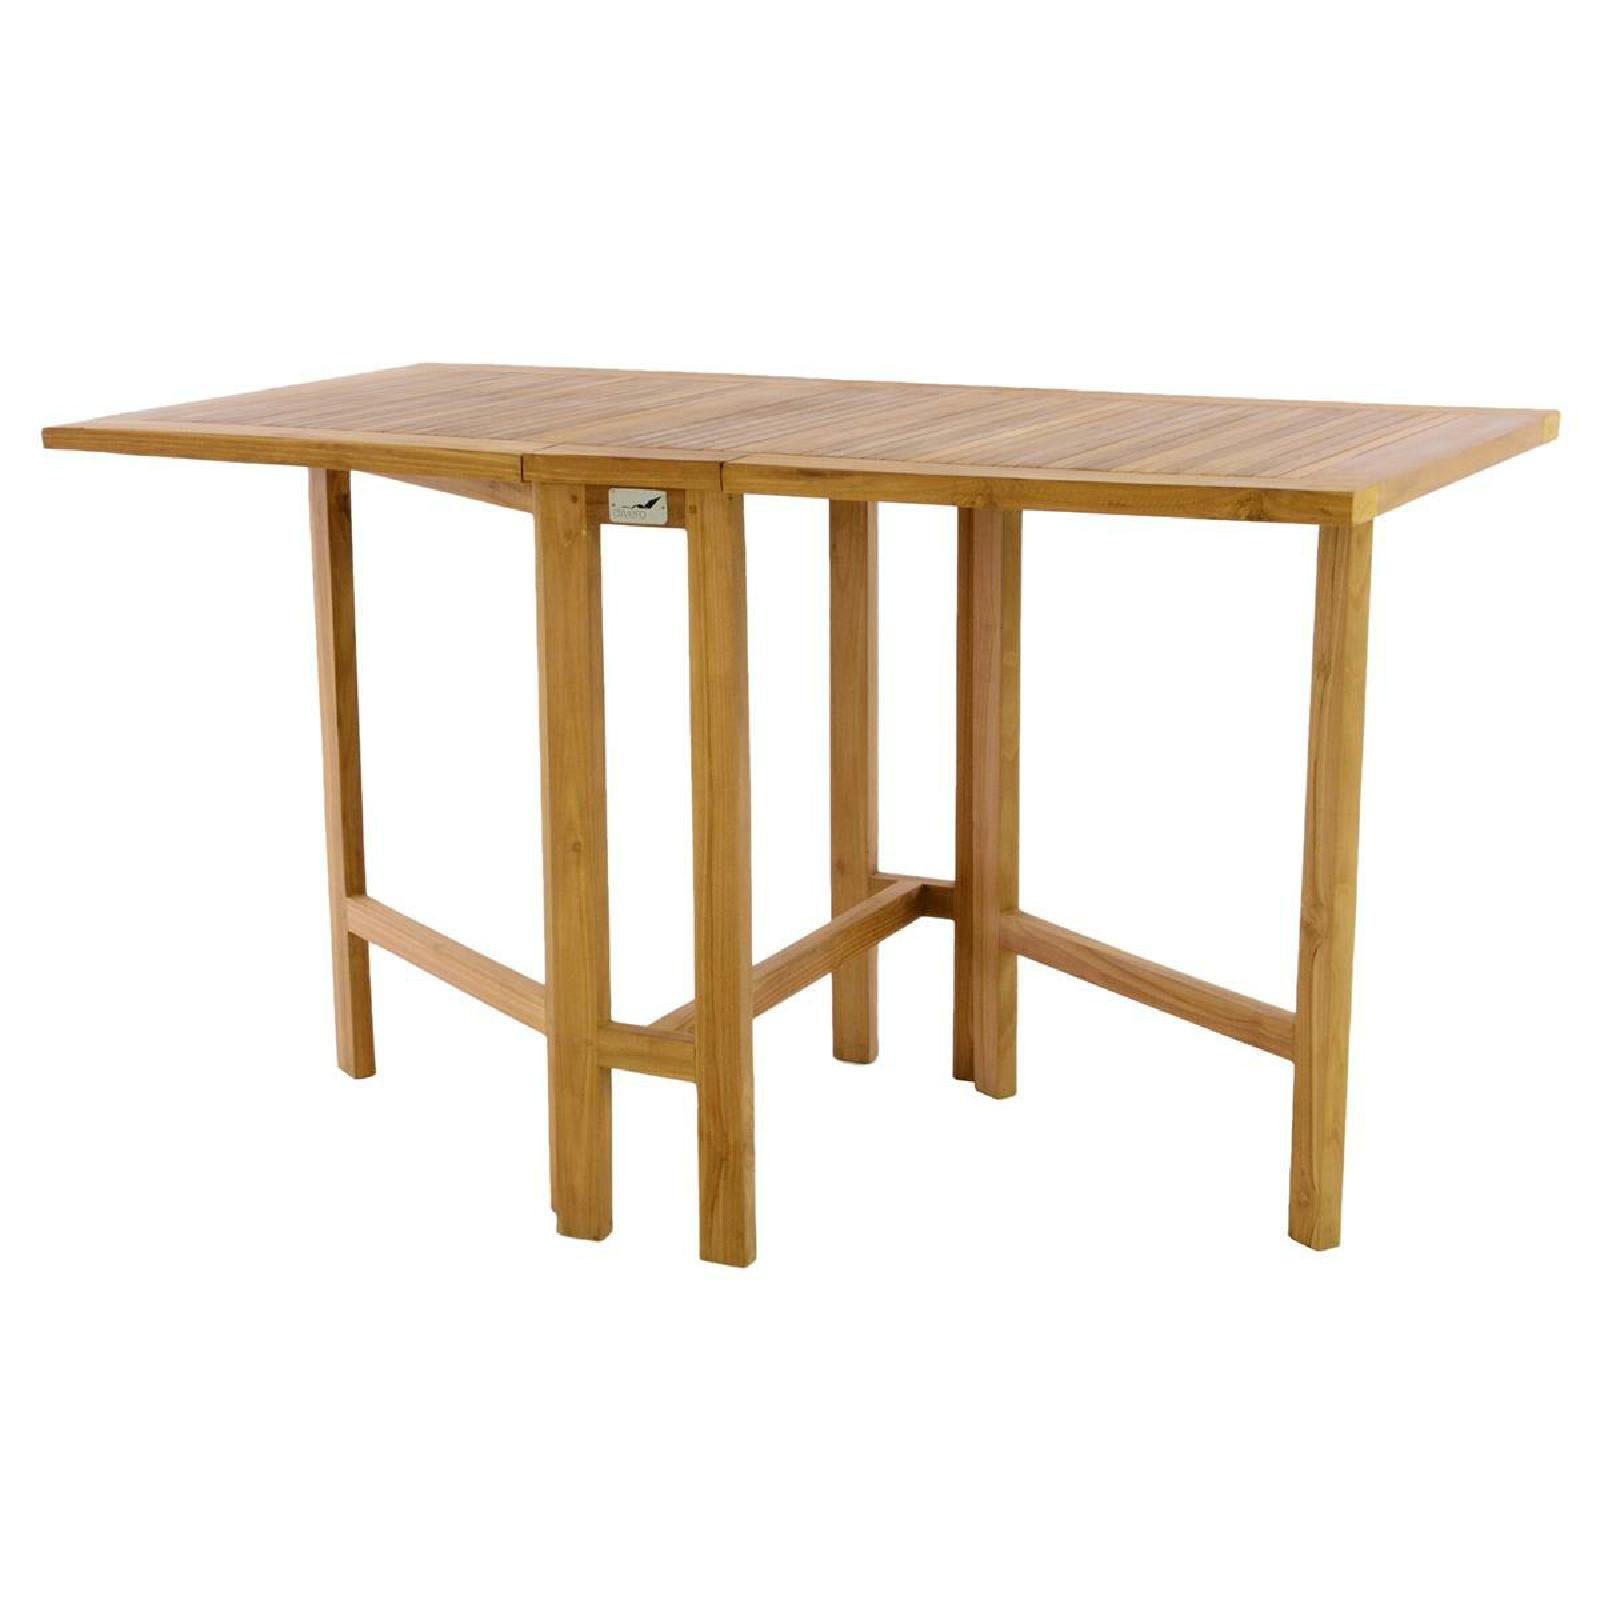 Holz VCM Gartentisch Tisch Gartentisch Teak Balkontisch Klapptisch